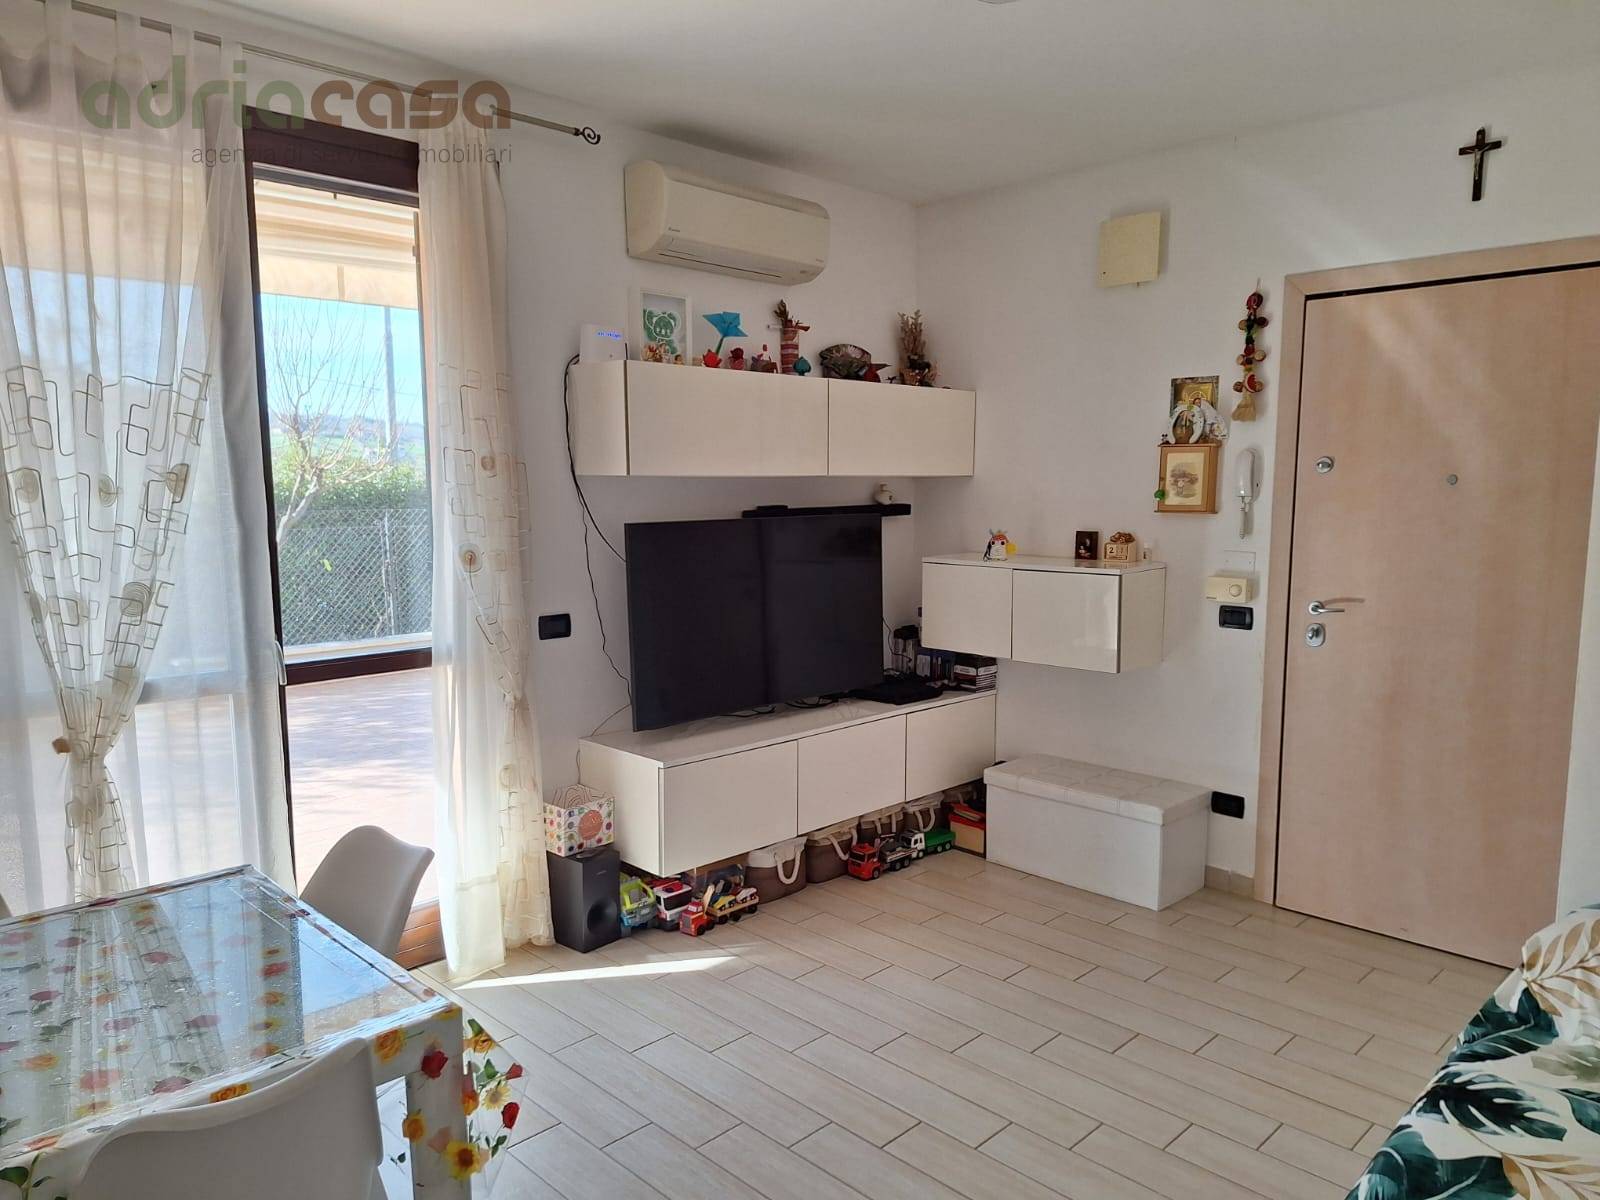 Appartamento in vendita a Coriano, 4 locali, prezzo € 285.000 | PortaleAgenzieImmobiliari.it